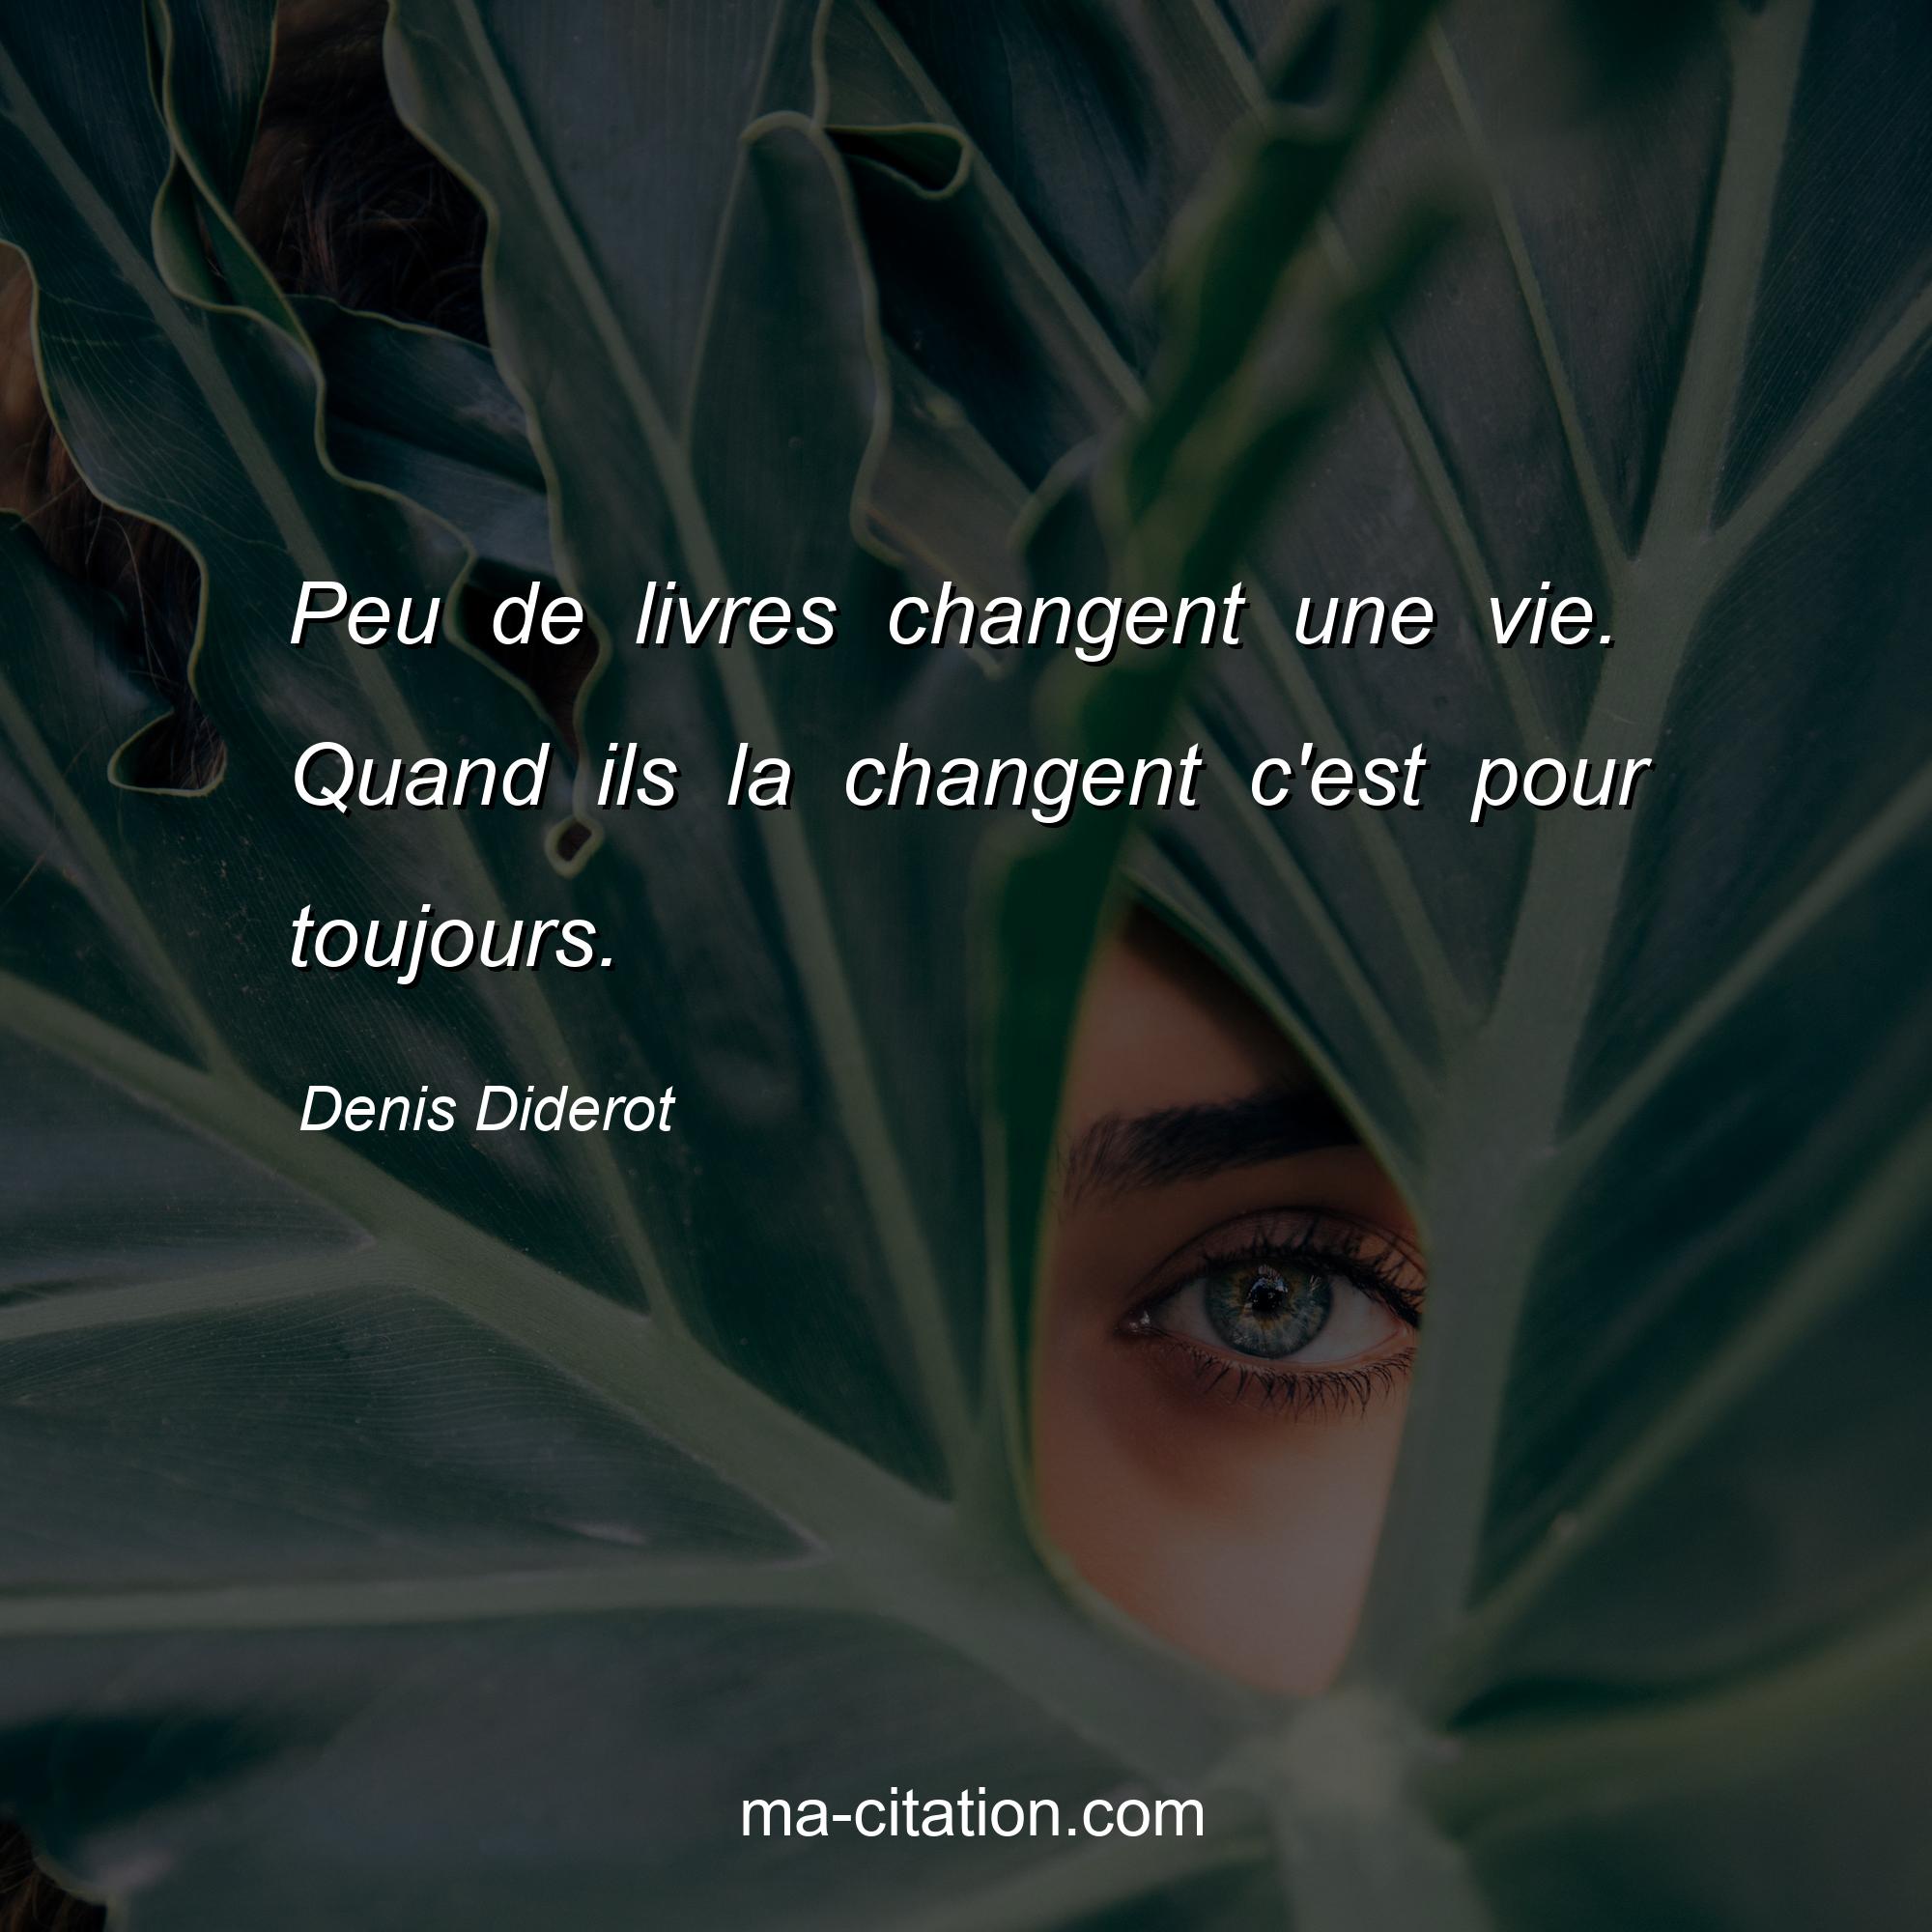 Denis Diderot : Peu de livres changent une vie. Quand ils la changent c'est pour toujours.